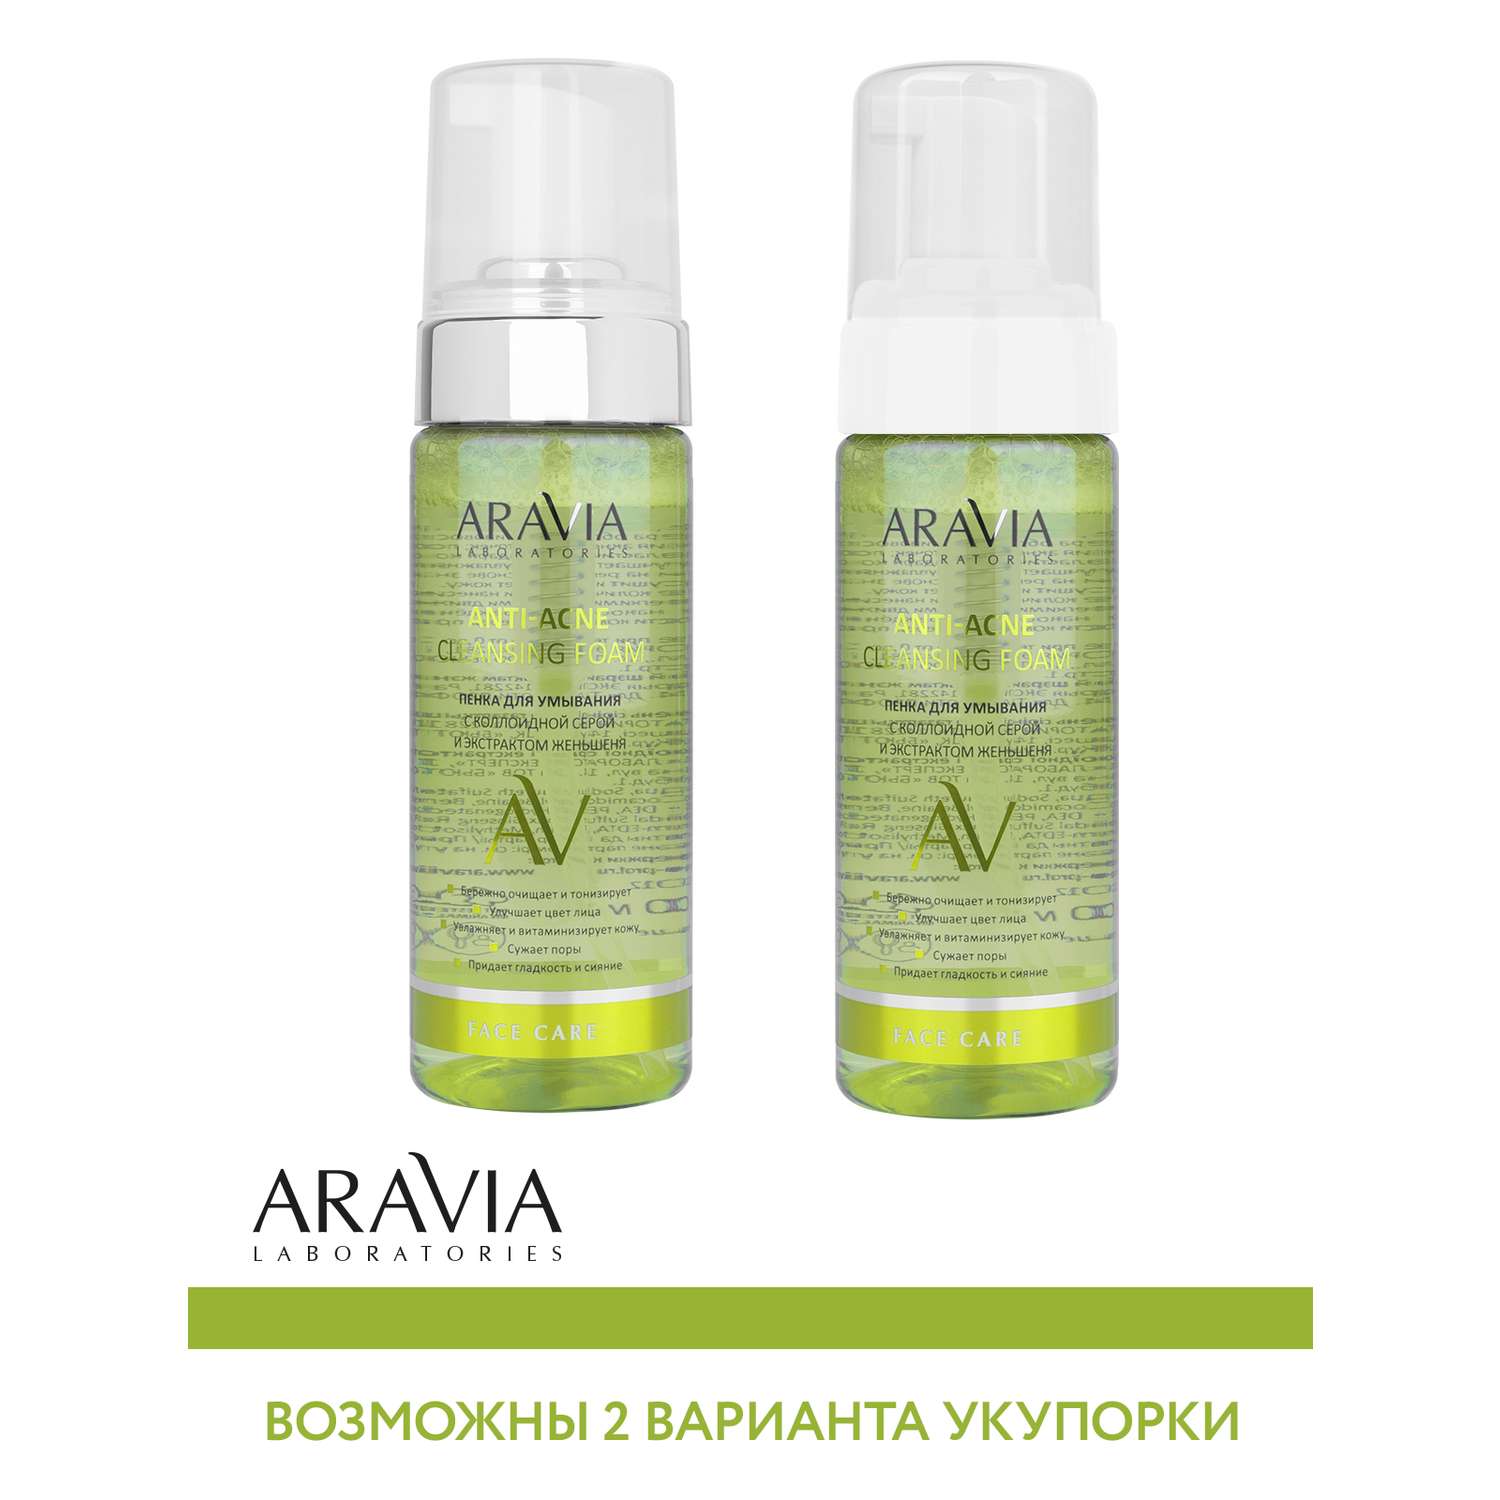 Пенка для умывания ARAVIA Laboratories с коллоидной серой и экстрактом женьшеня Anti-Acne Cleansing Foam 150 мл - фото 9